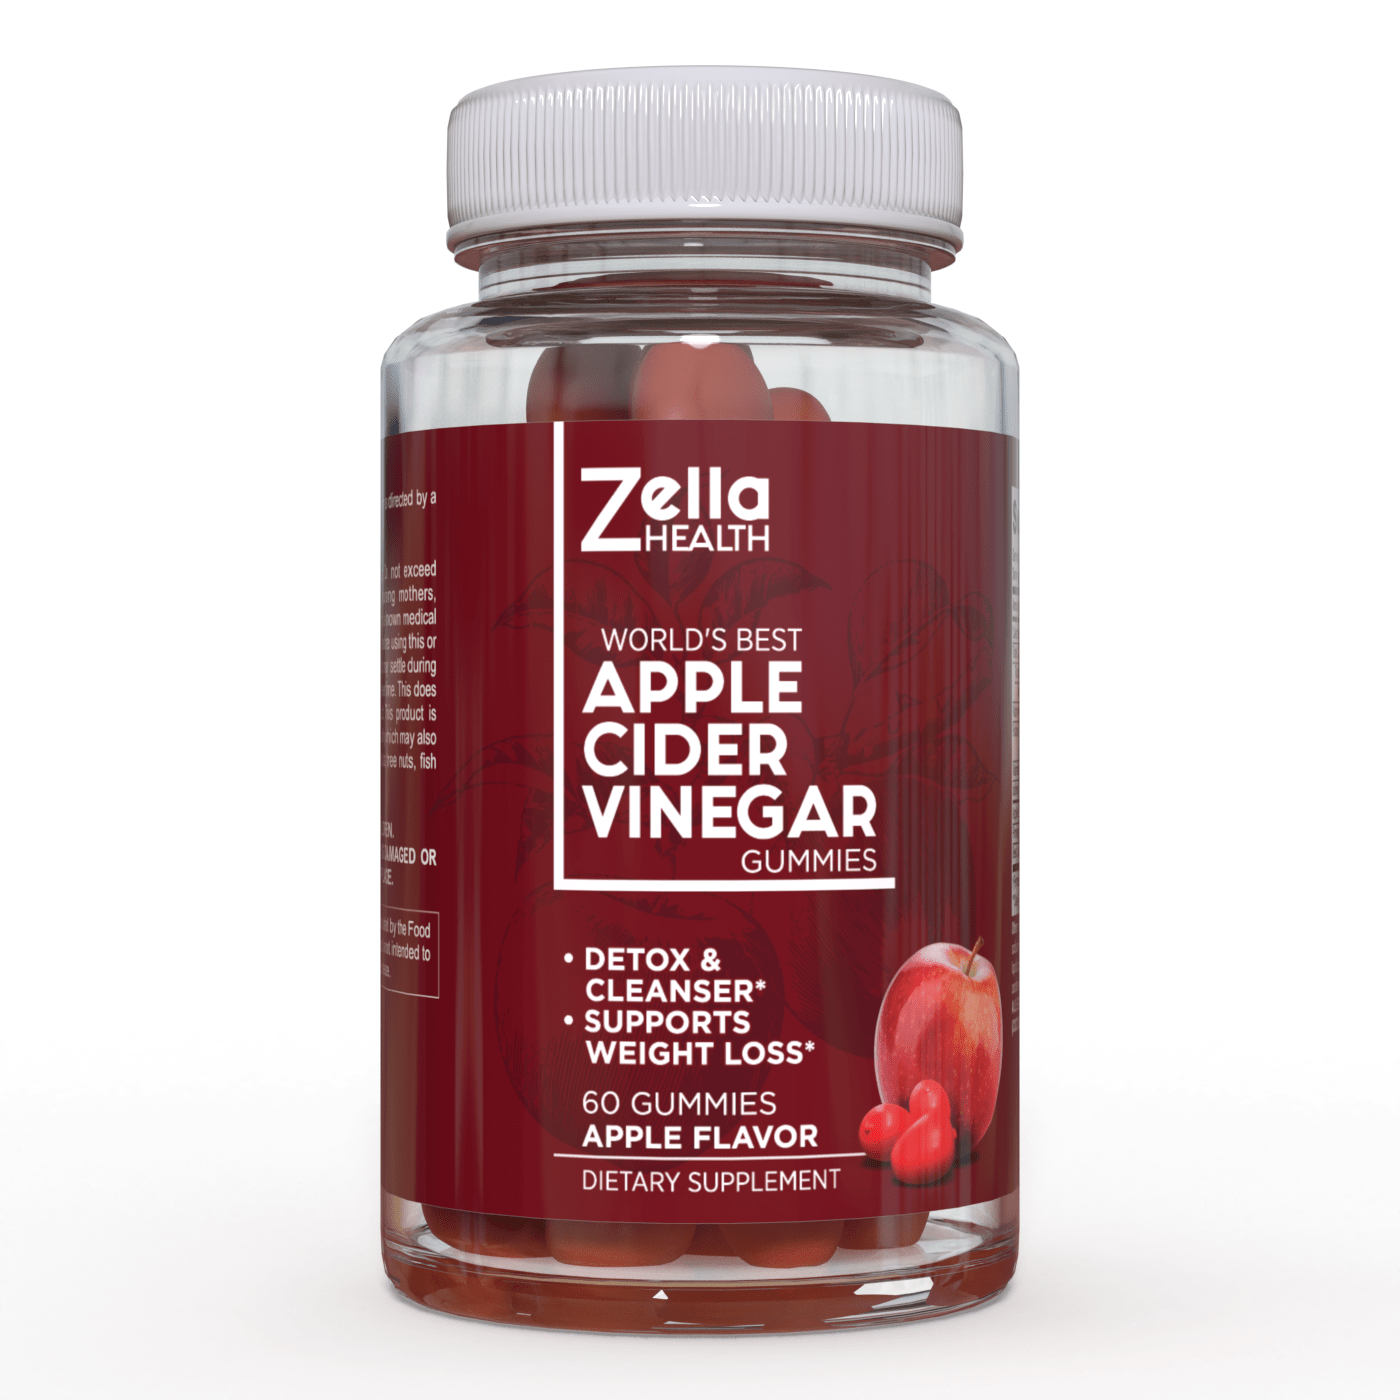 
                  
                    Gomitas de vinagre de sidra de manzana, suplemento de inmunidad, desintoxicación, limpieza y control de peso - Zella Health - 60 piezas
                  
                